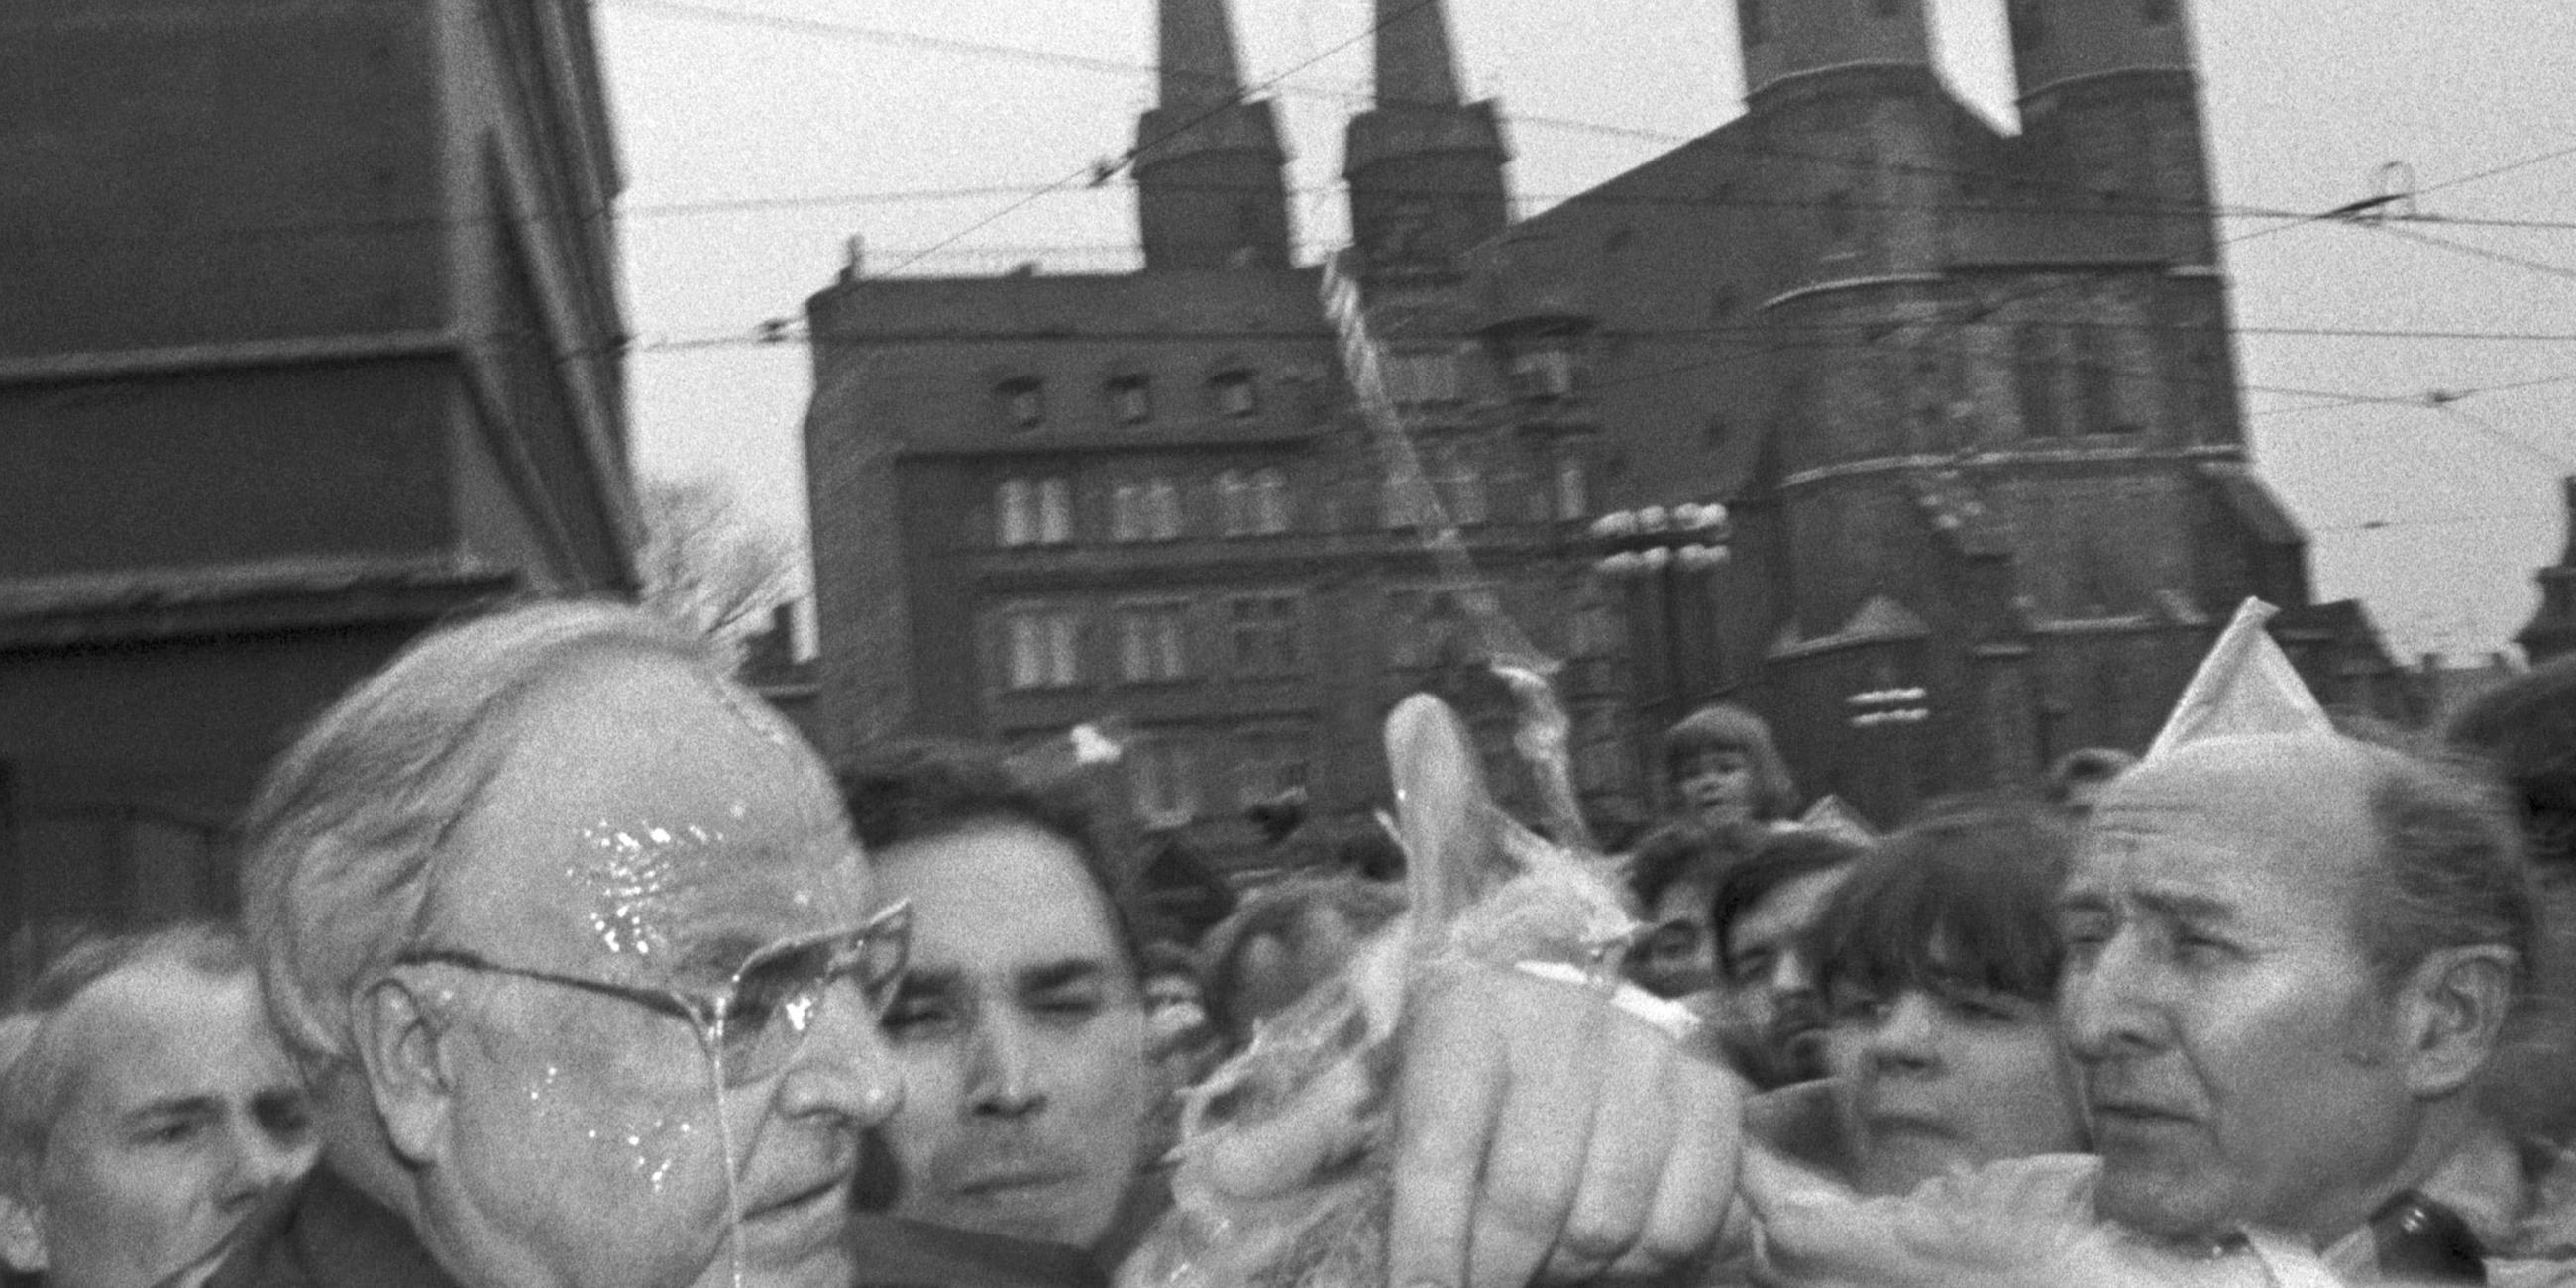 Helmut Kohl wird in Halle mit Eiern beworfen.